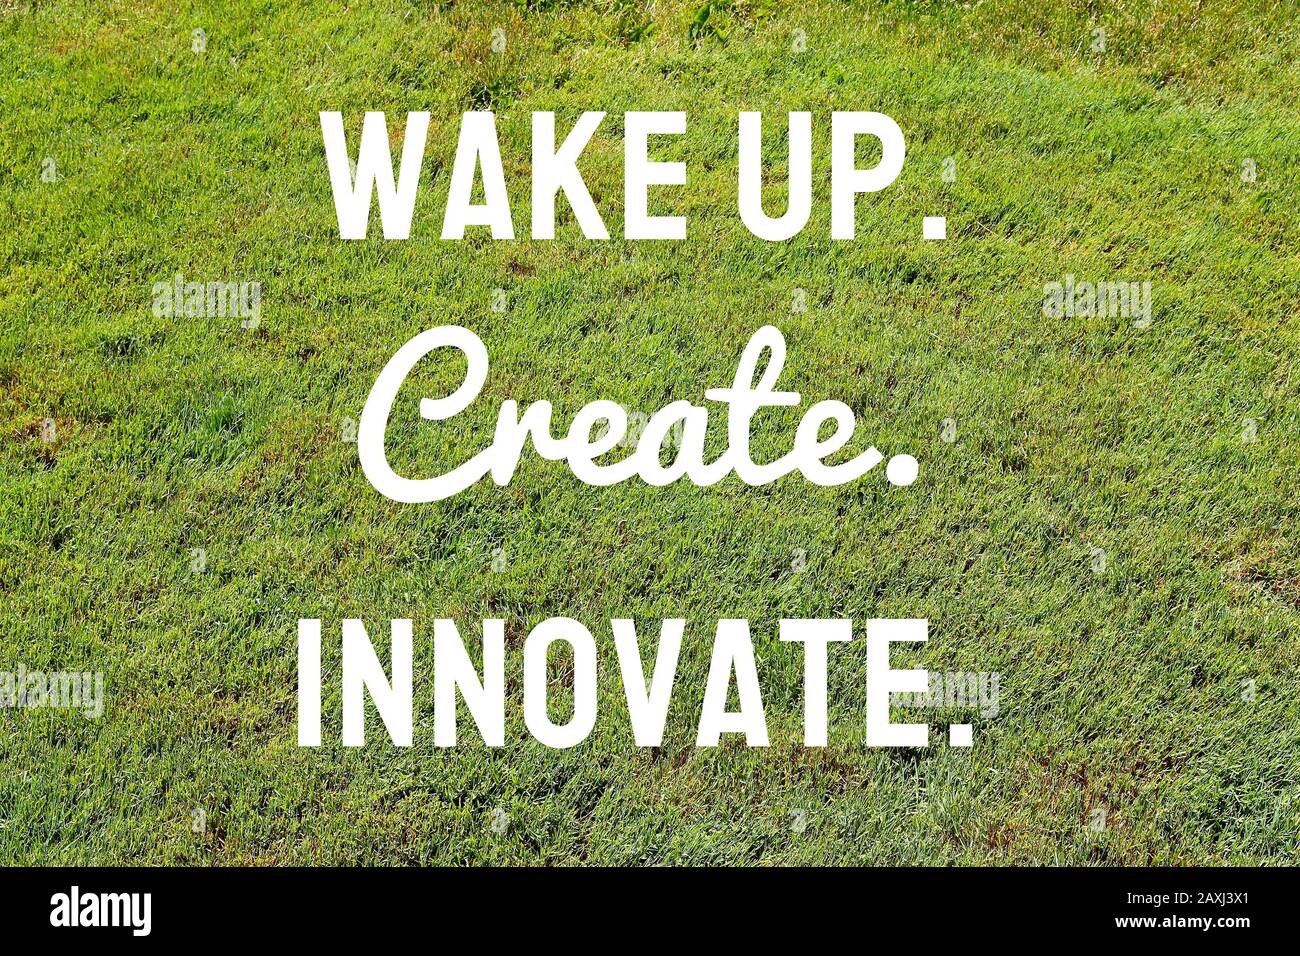 Aufwachen, erschaffen, innovieren - Poster zur Motivation des Unternehmens beim Technologiestart. Stockfoto